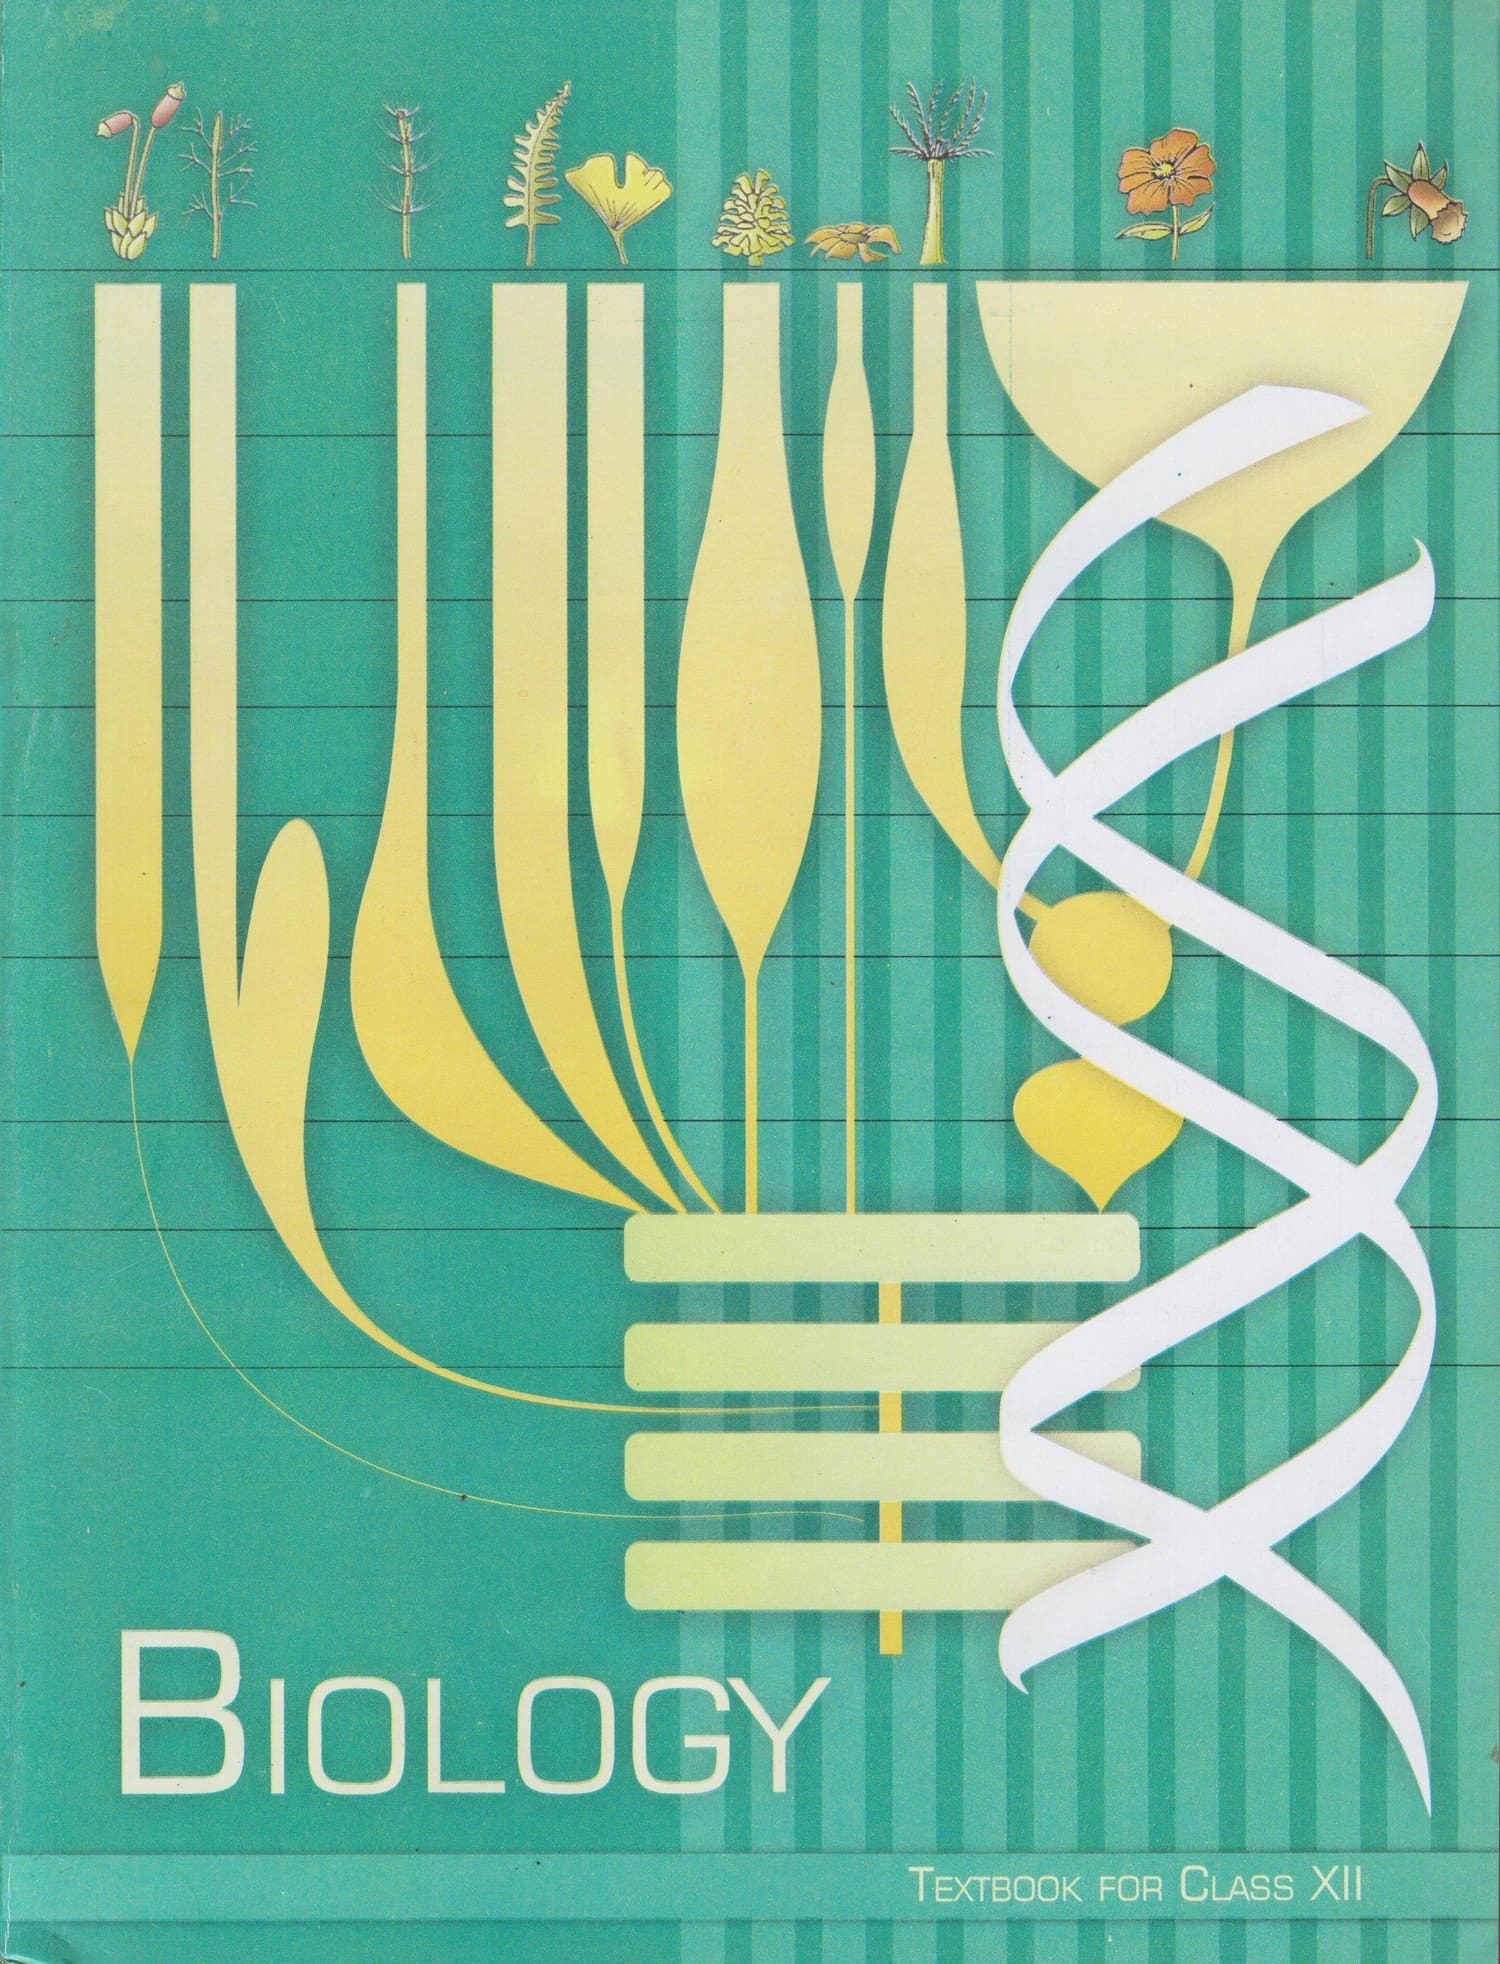 NCERT Class 12 Biology book logo